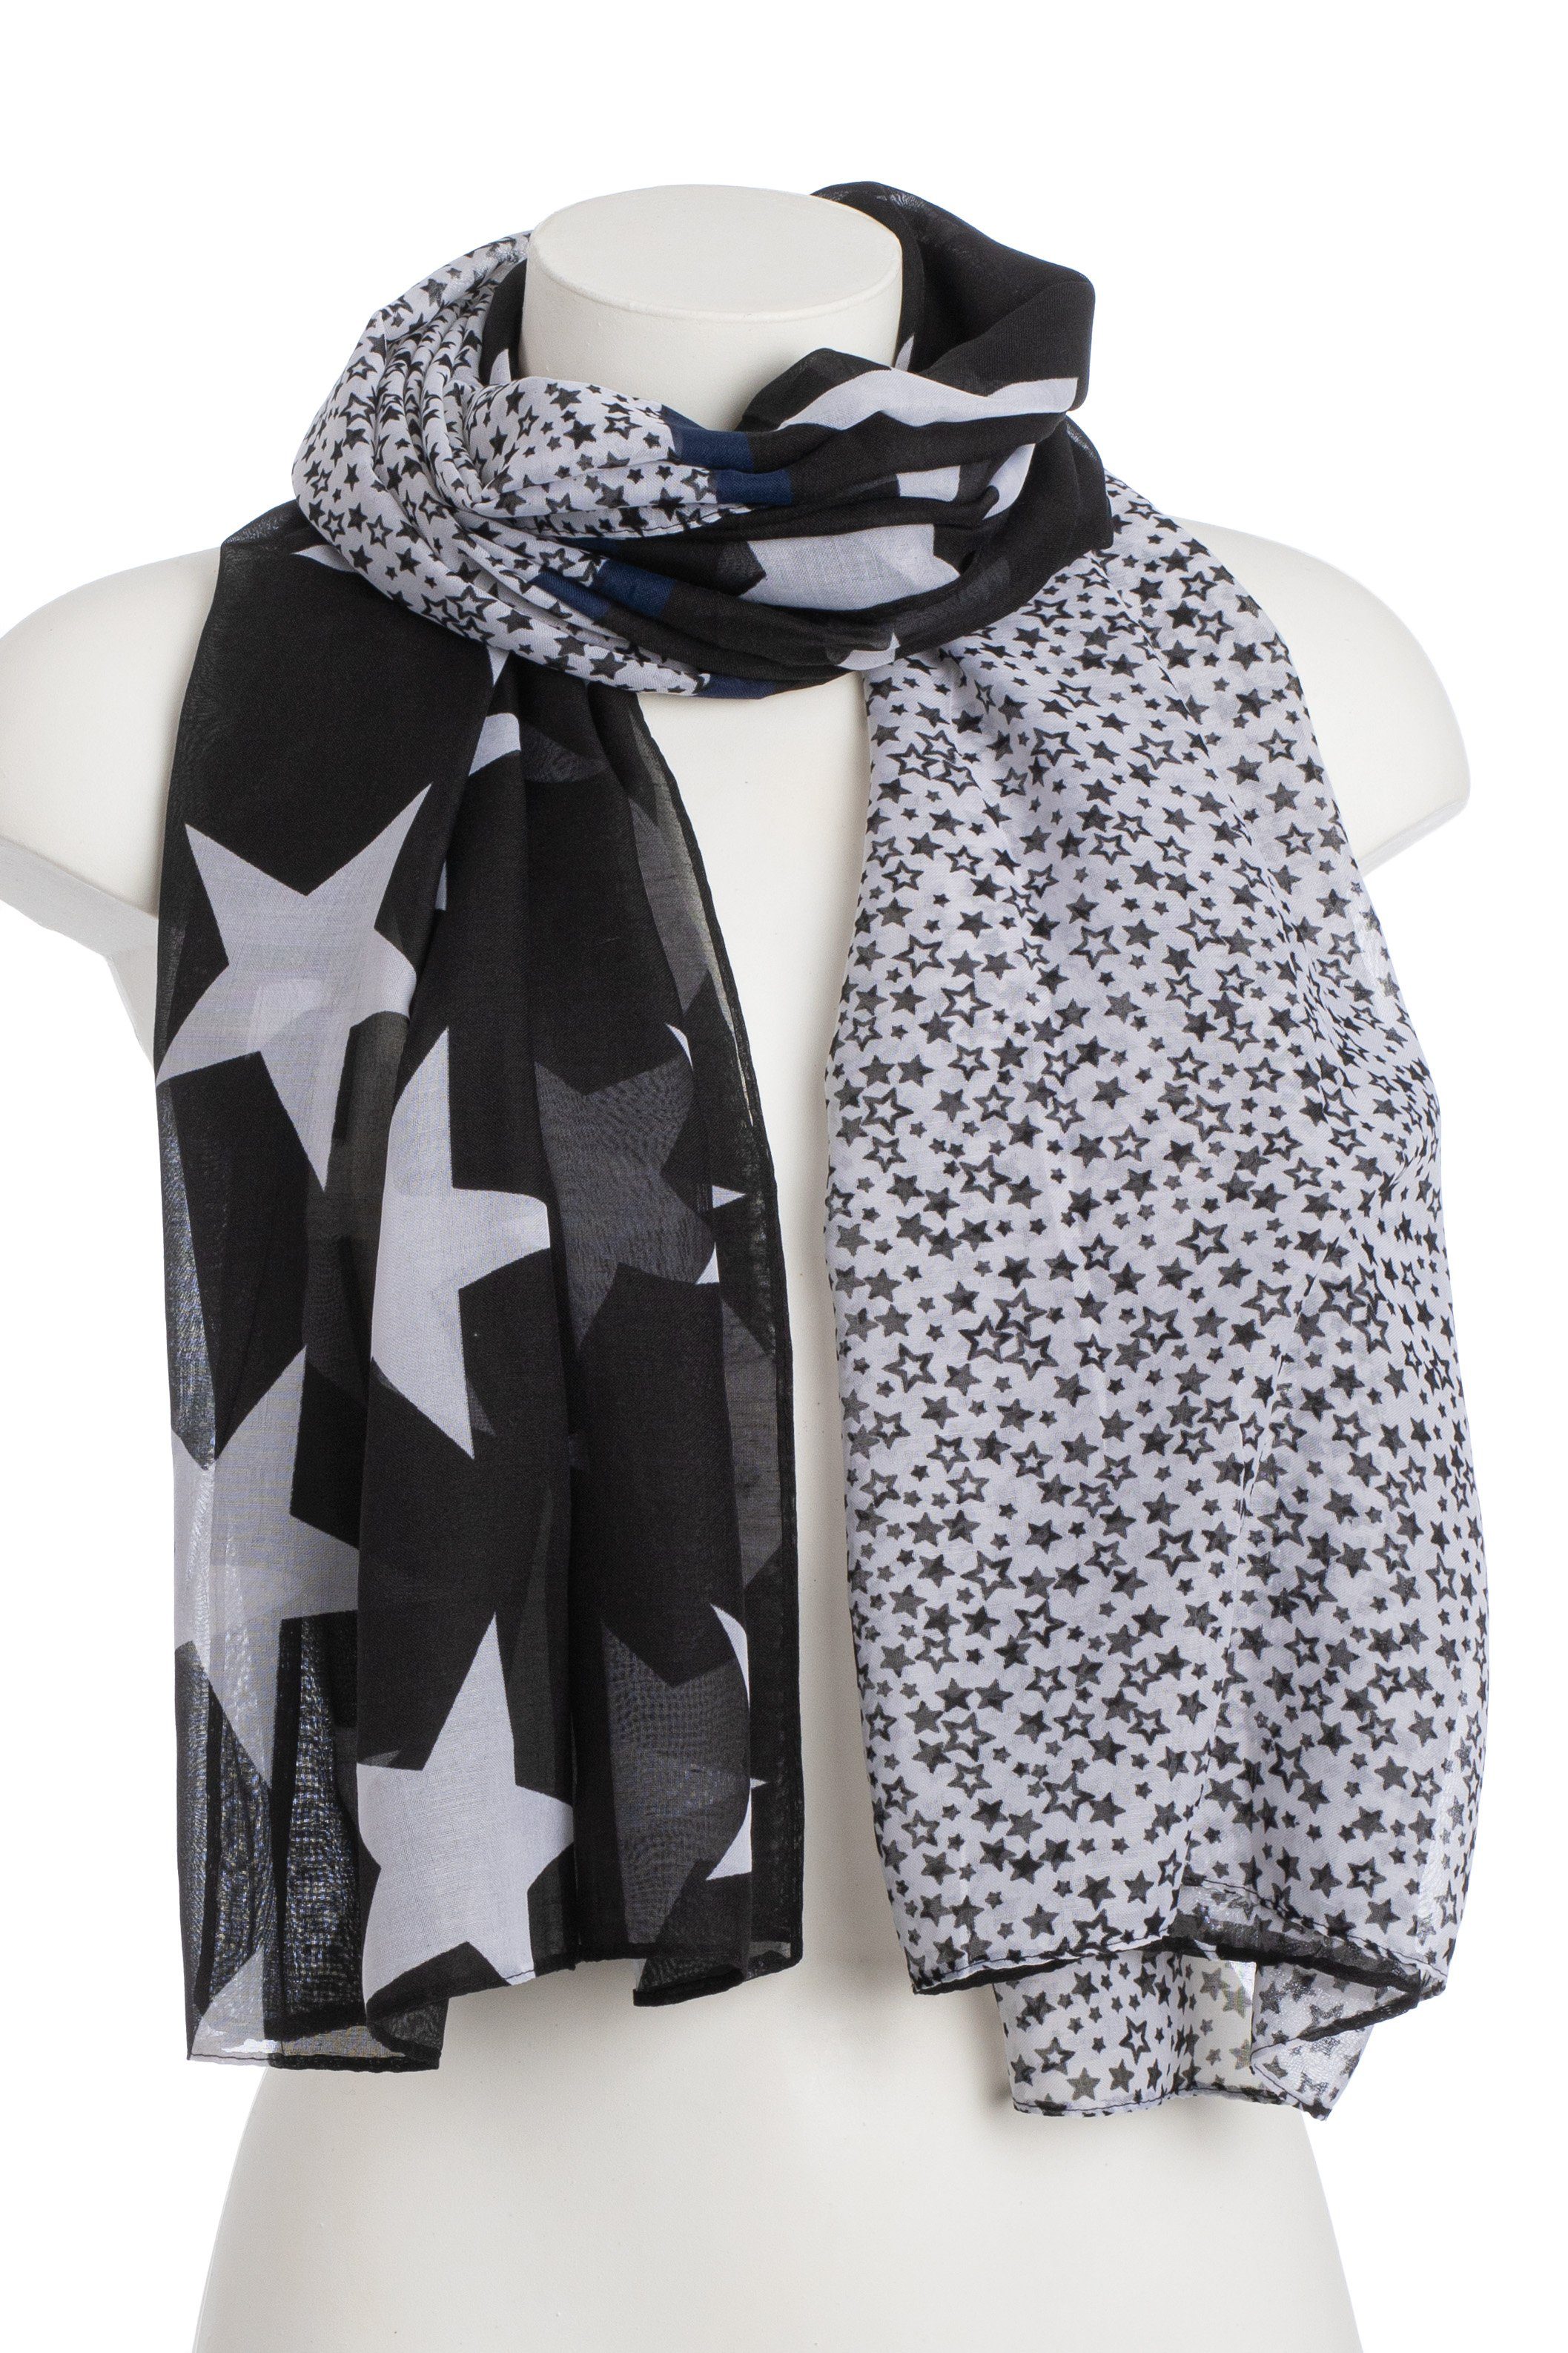 Goodman Design Modeschal Schal Sterne mit trendigem Design, angenehmer Tragekomfort